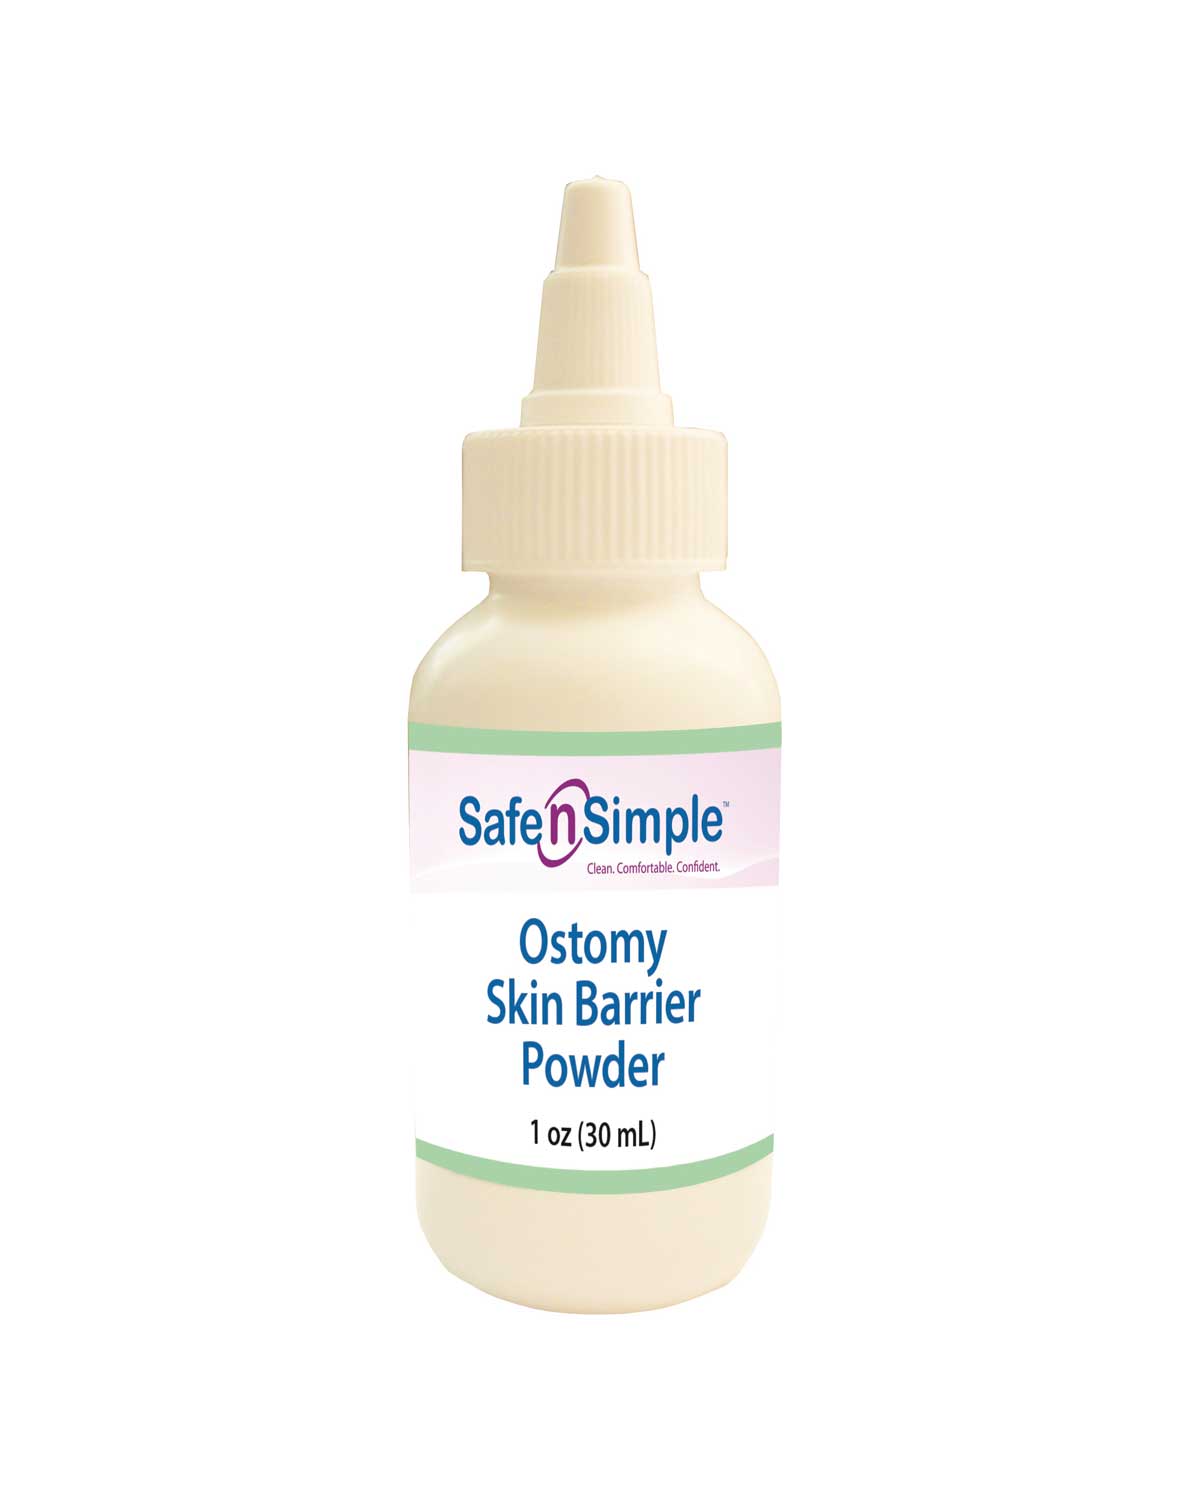 Safe n Simple Skin Barrier Powder 1oz Bottle - 1 bottle